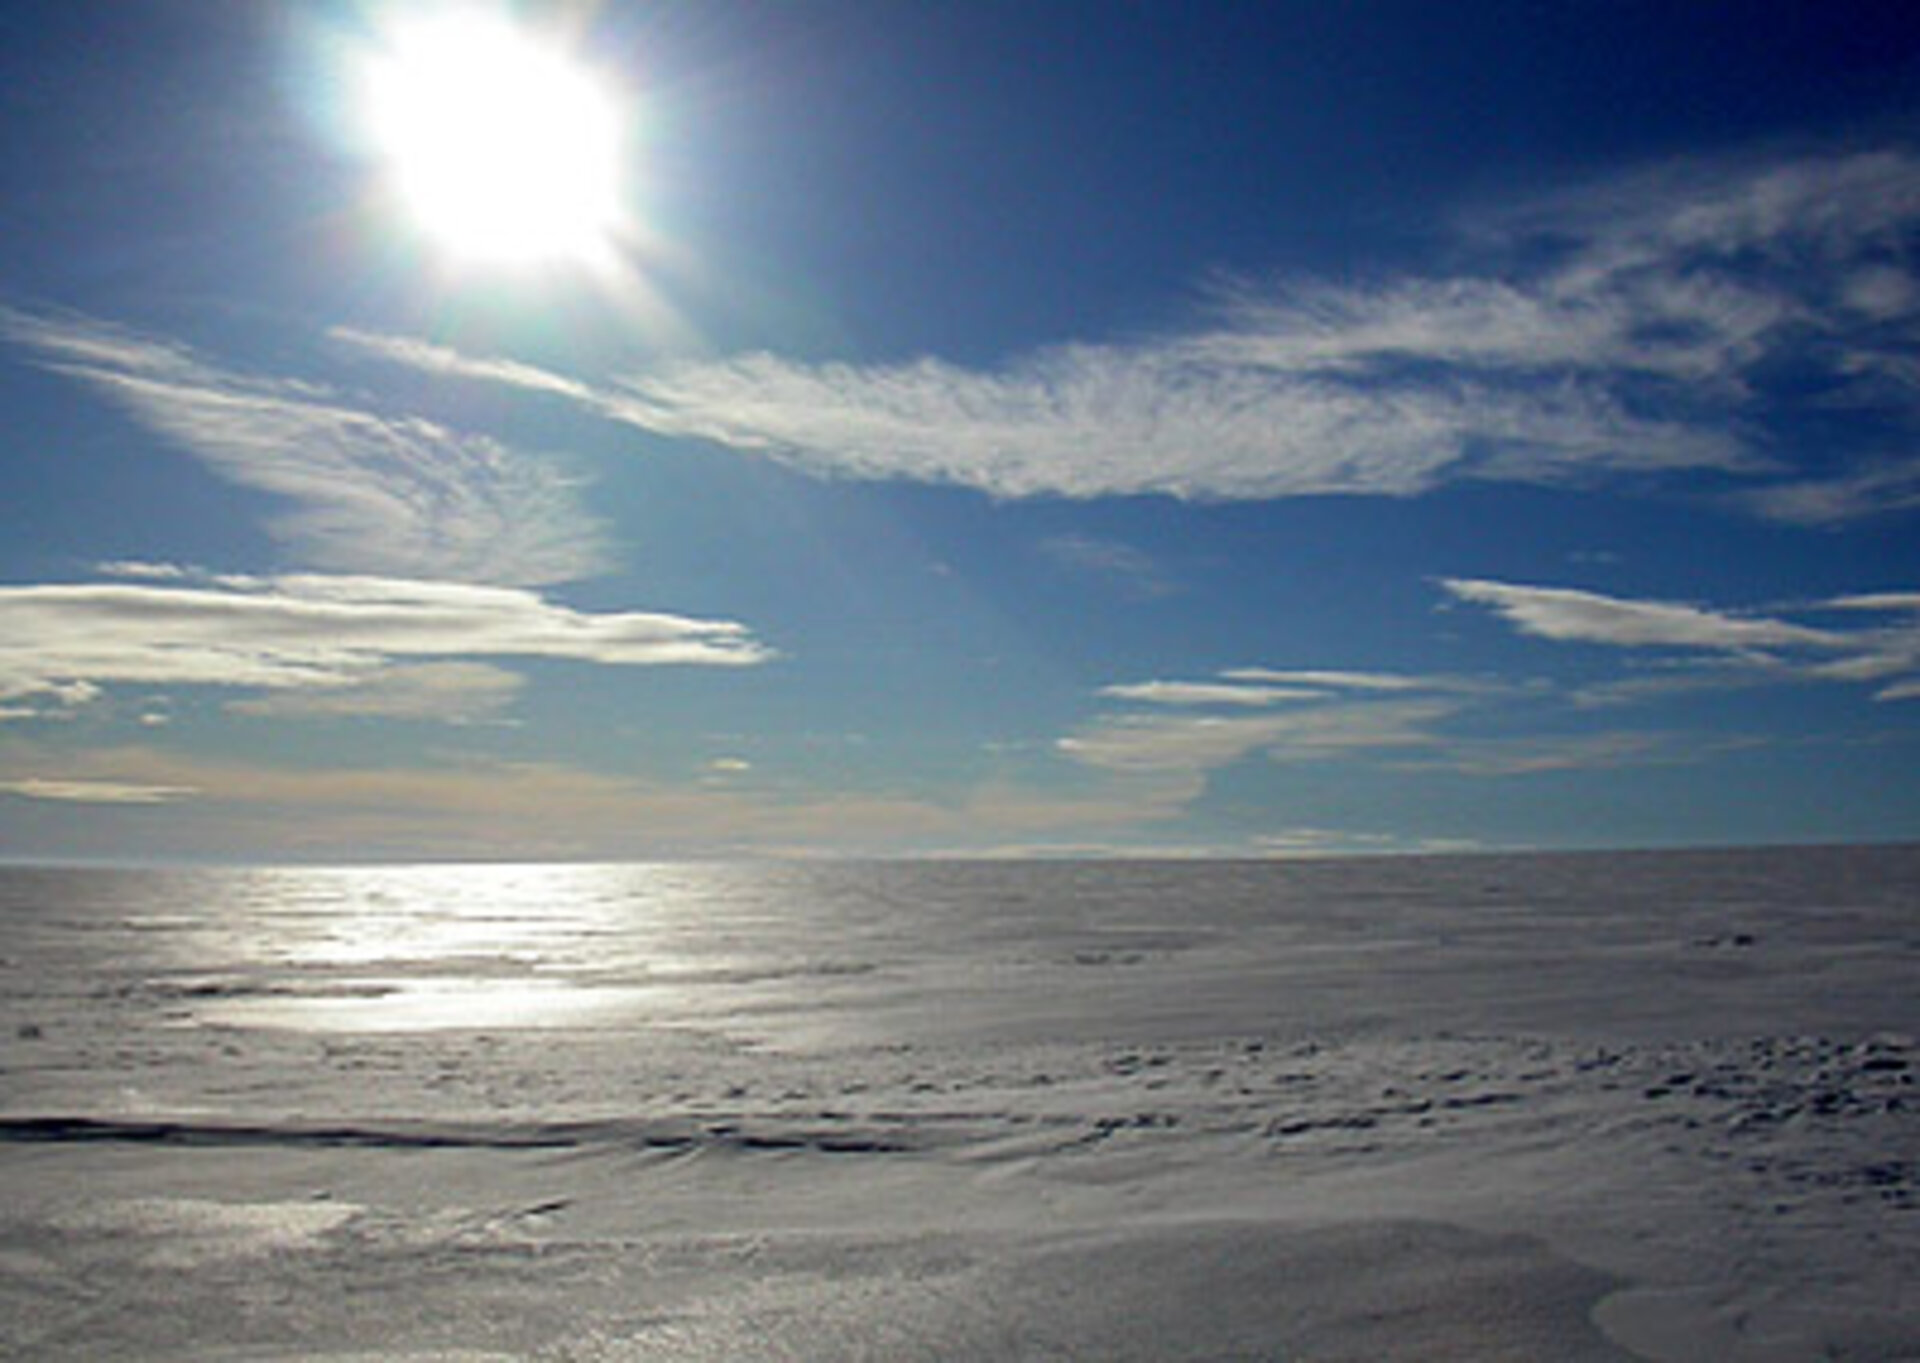 Vast expanse of ice sheet